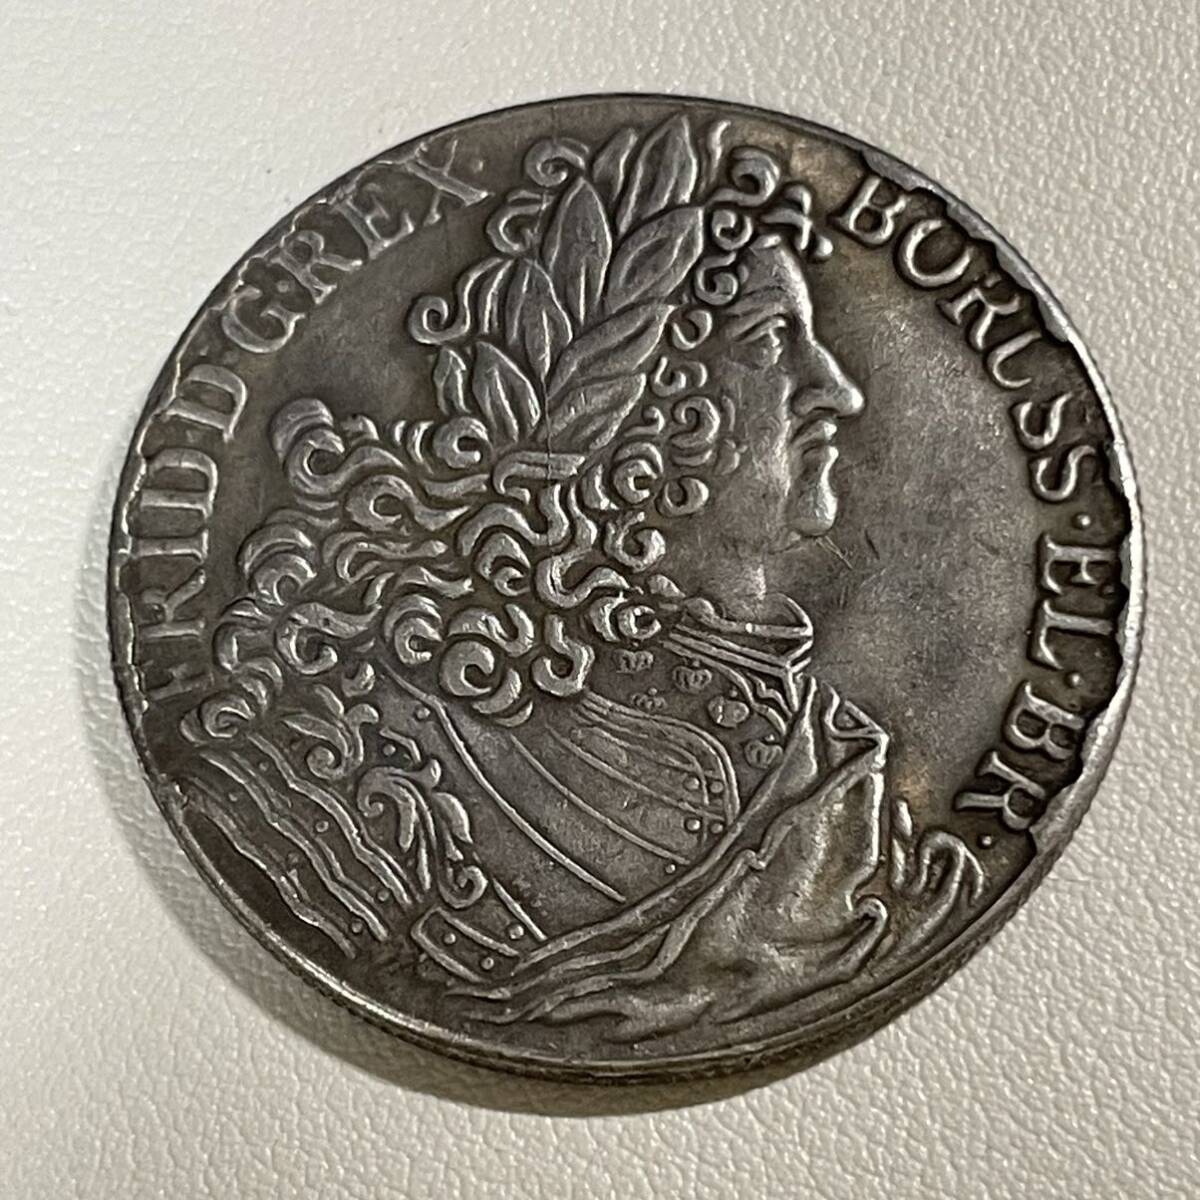 ドイツ 硬貨 古銭 プロイセン王国 1707年 フリードリヒ1世 月桂樹 国章 クラウン コイン 重21.93g_画像2